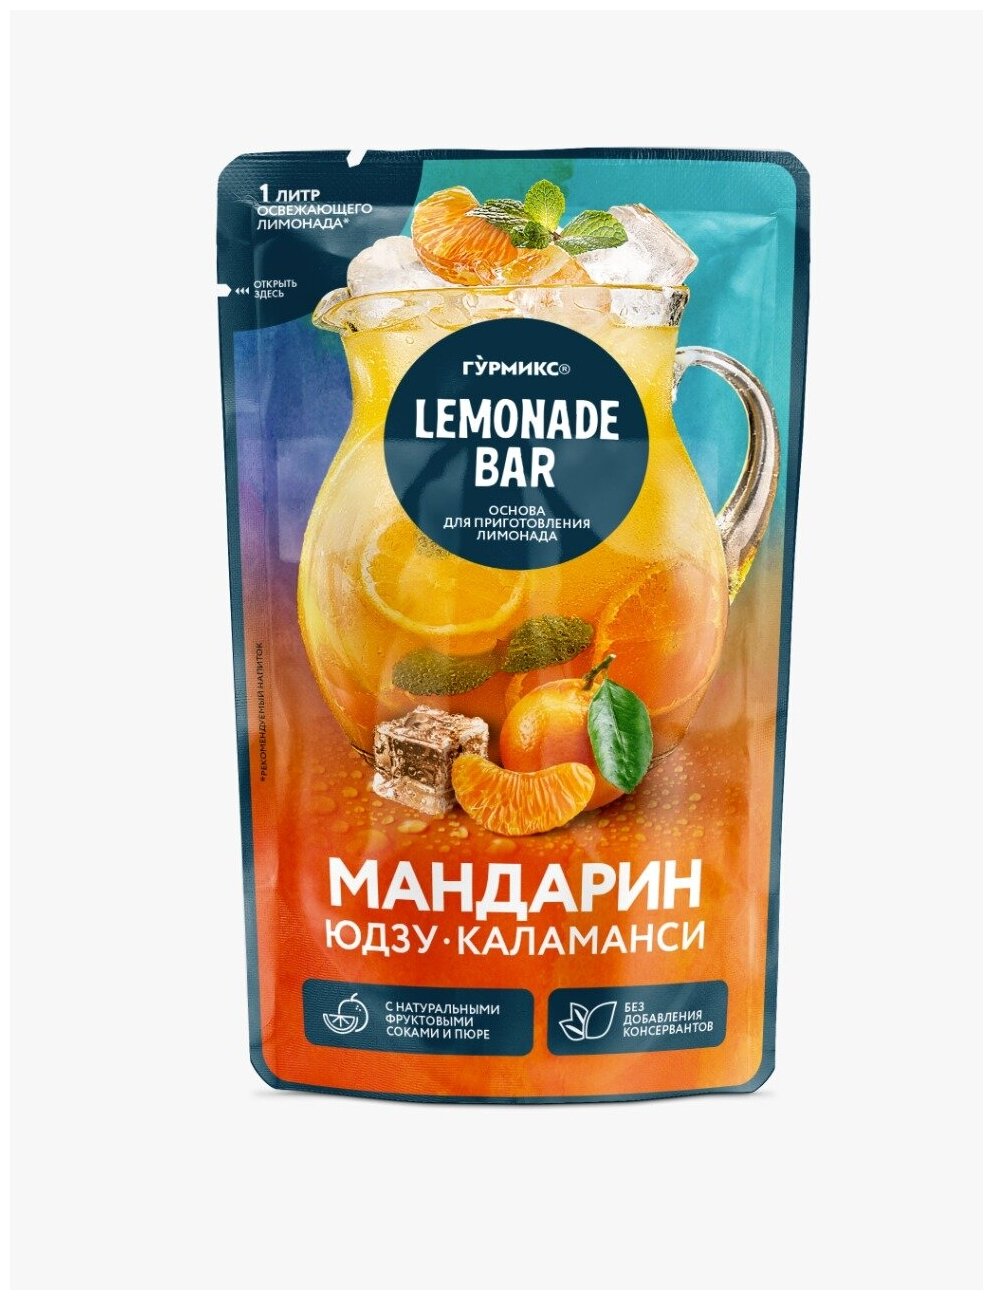 Основа для приготовления лимонада "Мандарин юдзу и каламанси" Гурмикс 150 грамм